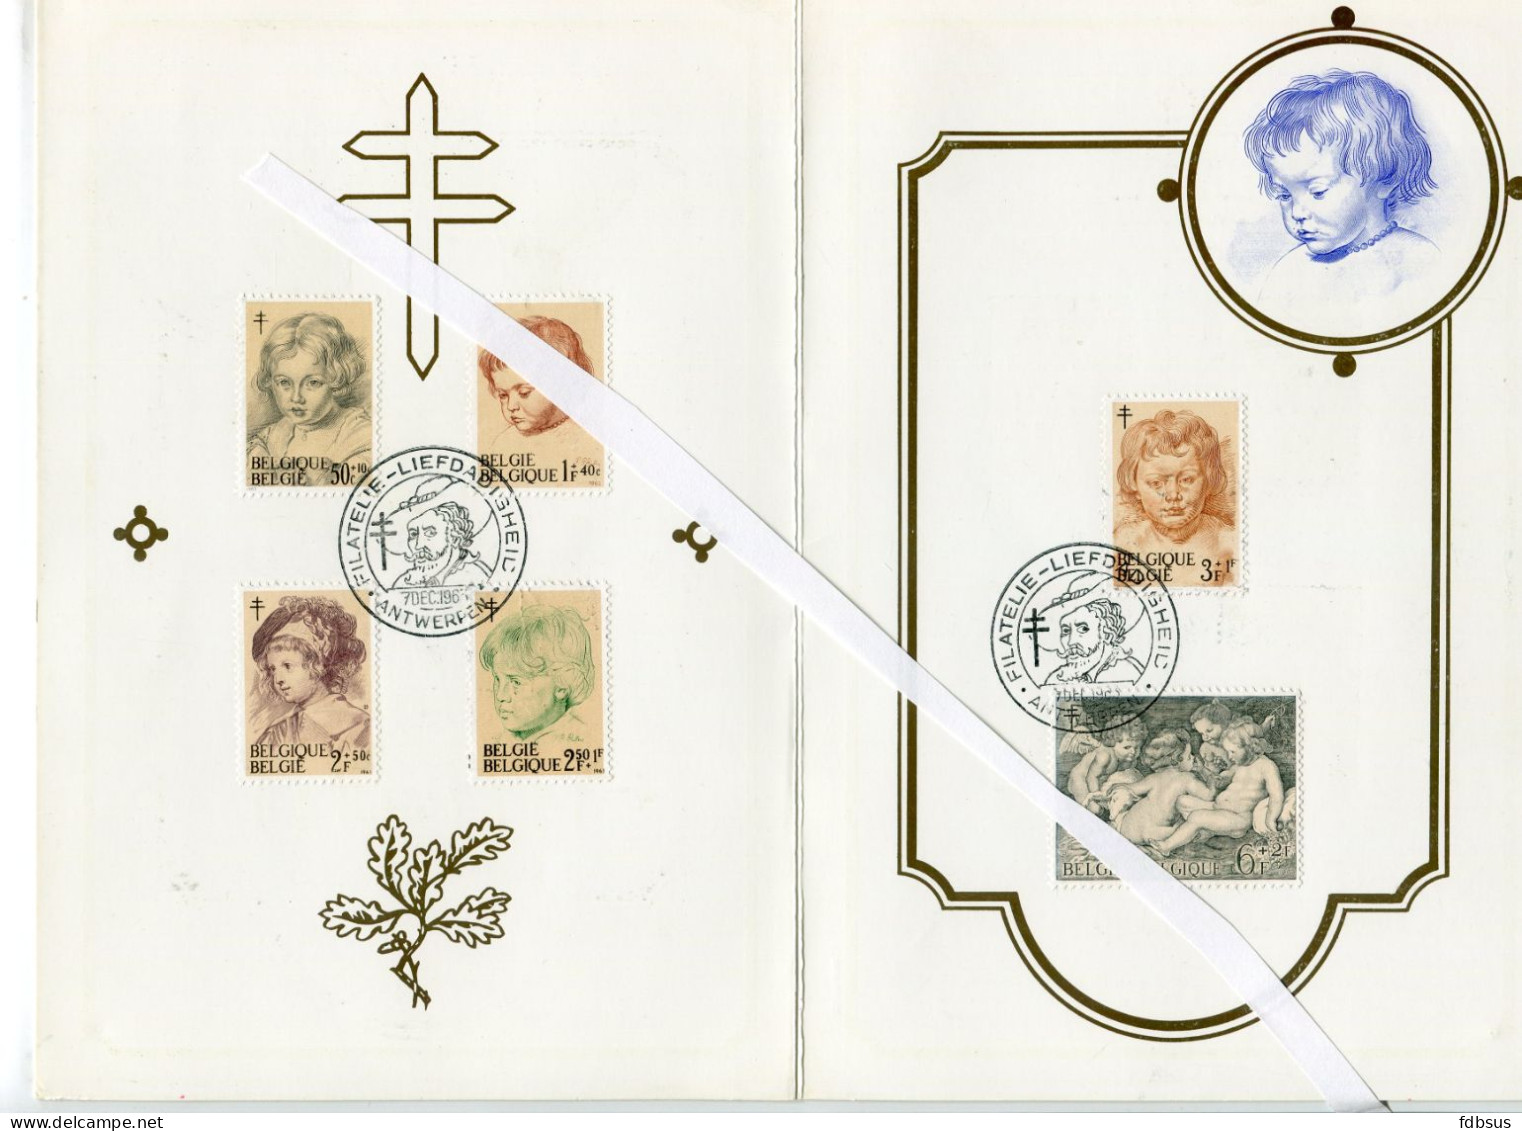 Rubens verzameling - postzegels, blokken, Fdc's , briefkaarten en maximum kaarten en andere op bladen met uitleg in Nl